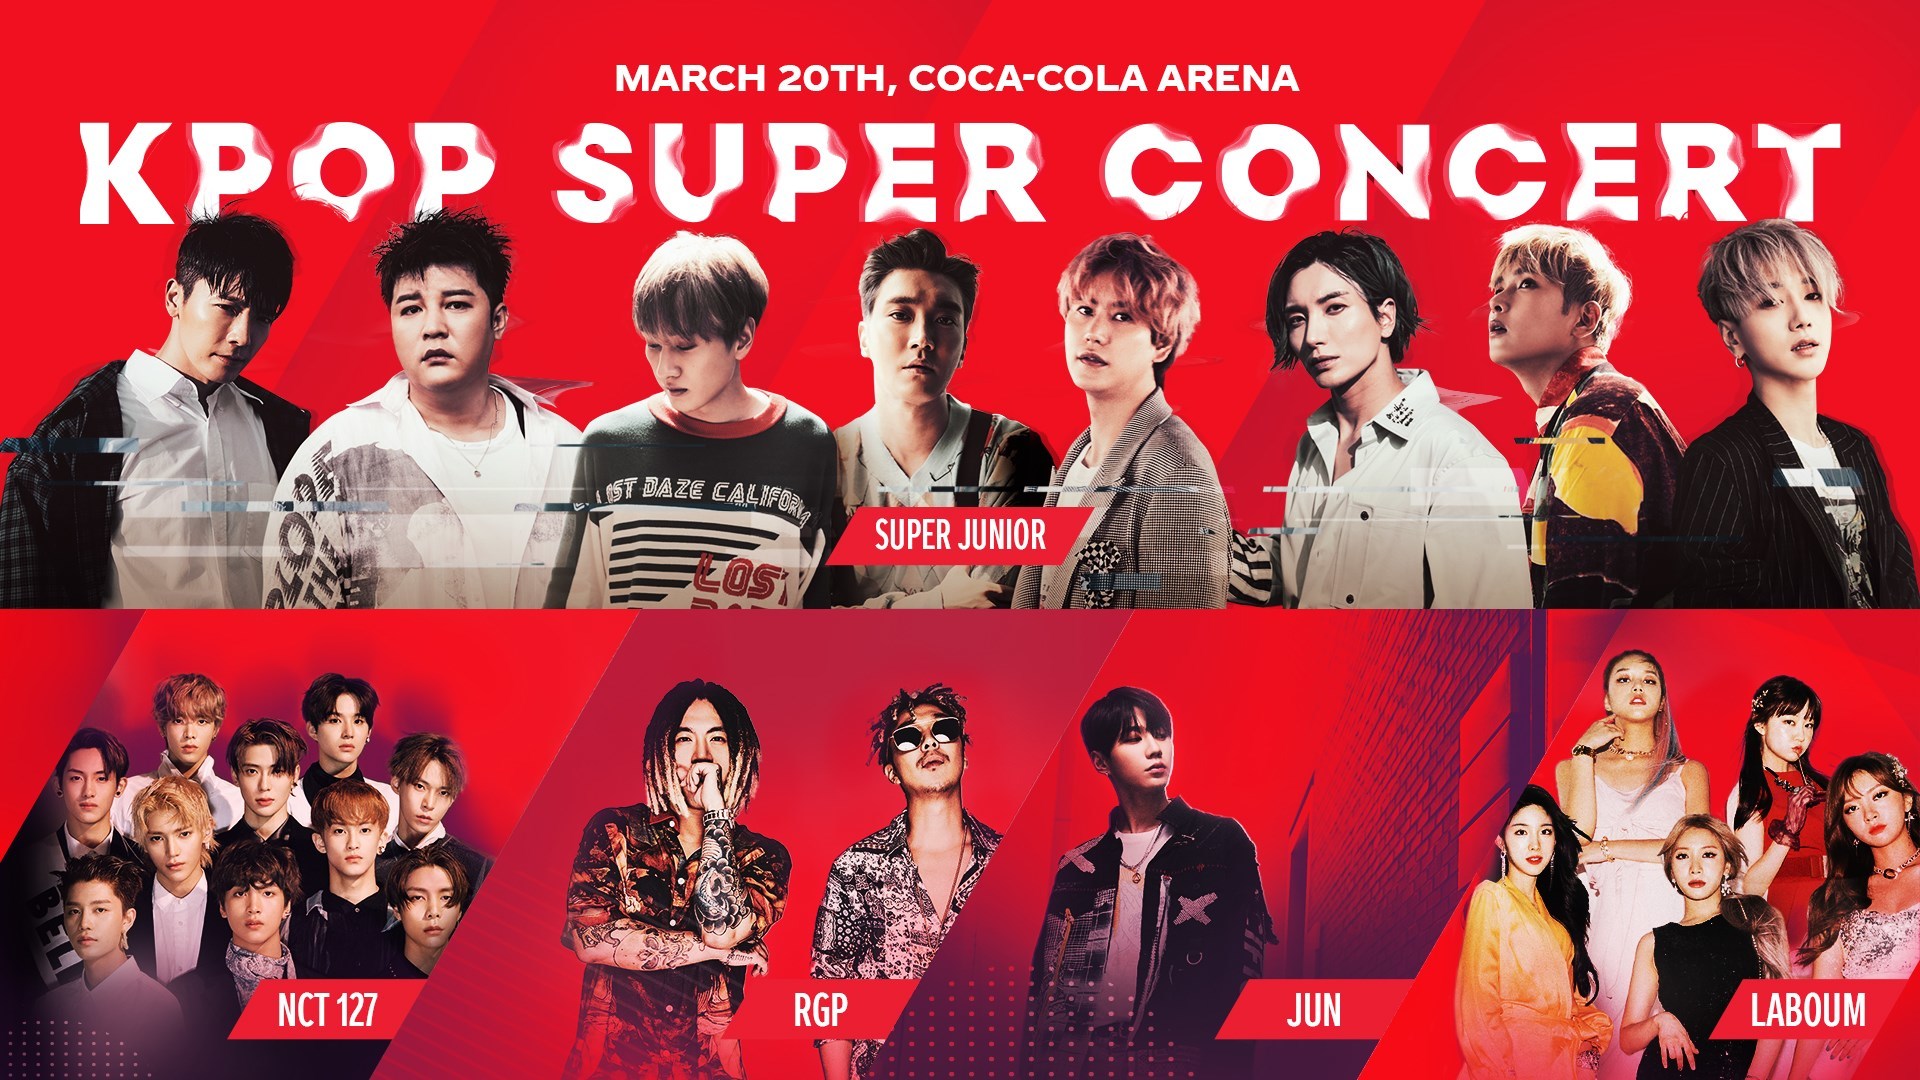 K-Pop Super Concert on Mar 20th at Coca-Cola Arena Dubai 2020